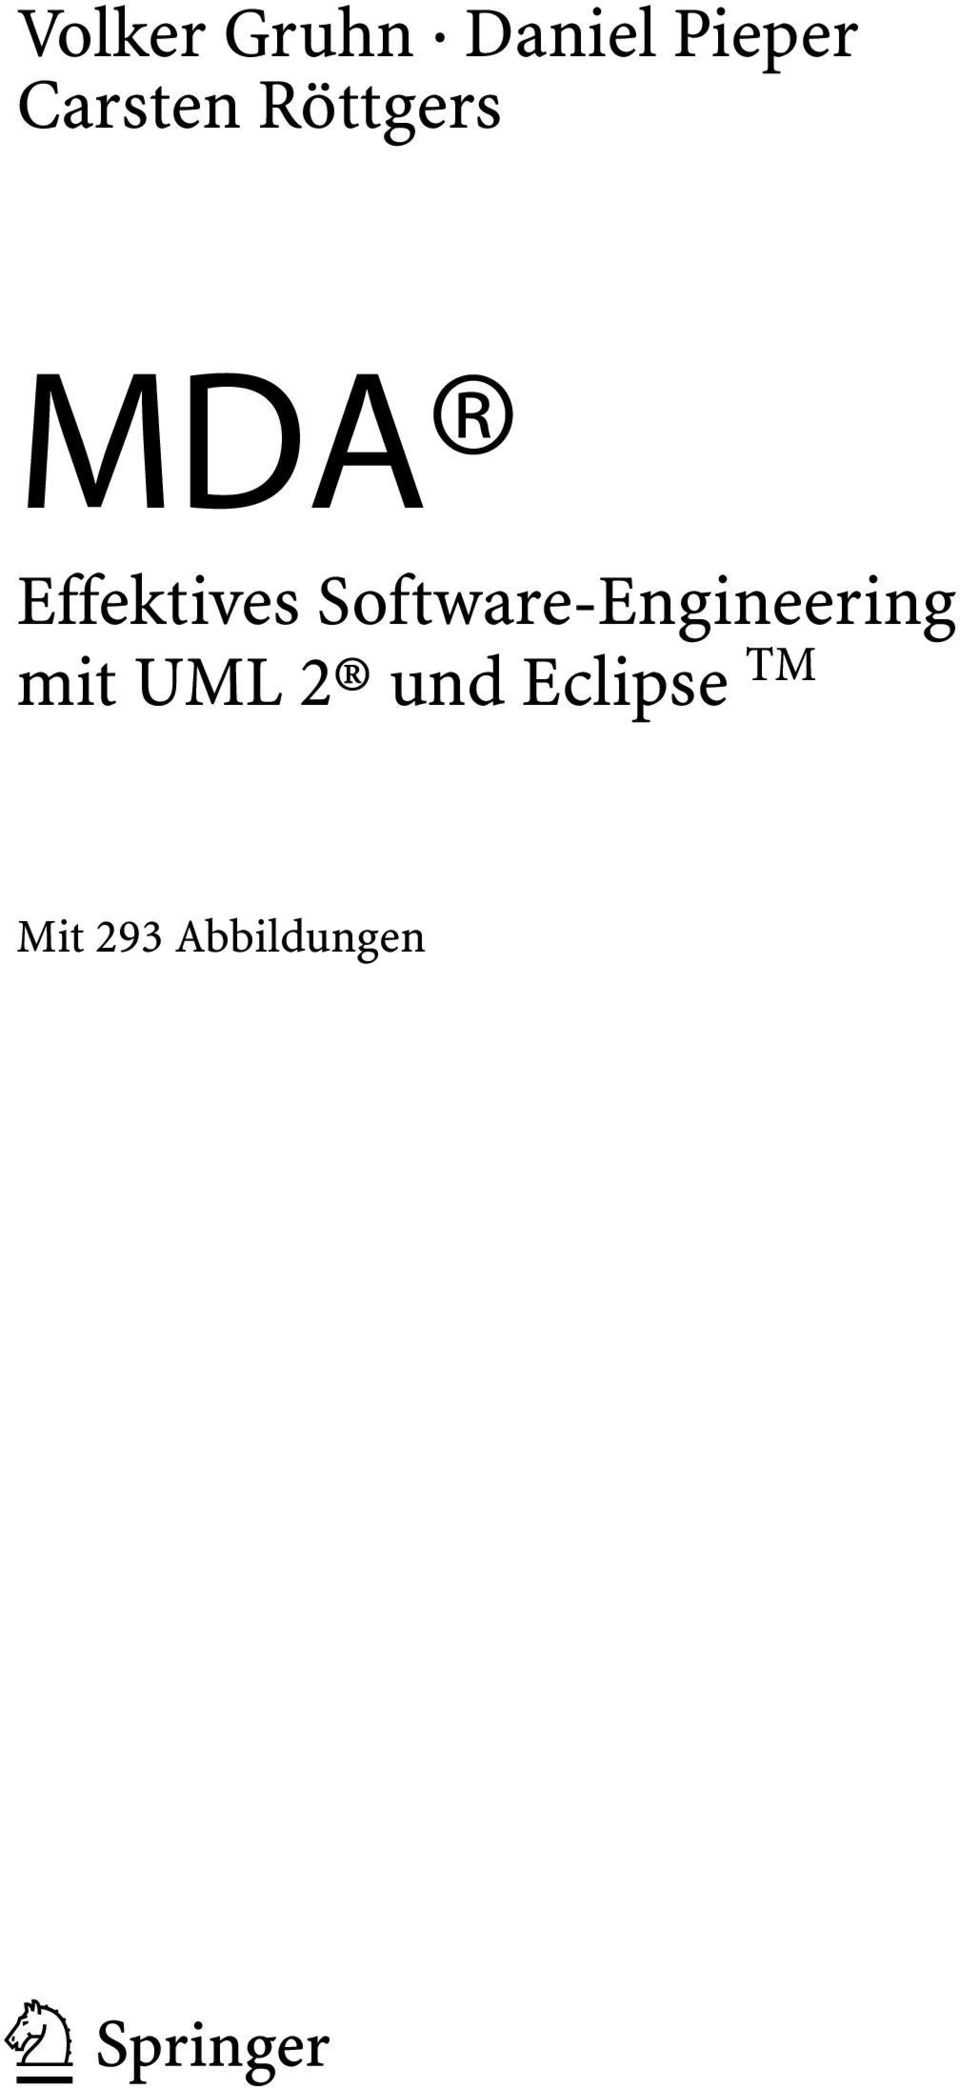 Software-Engineering mit UML 2